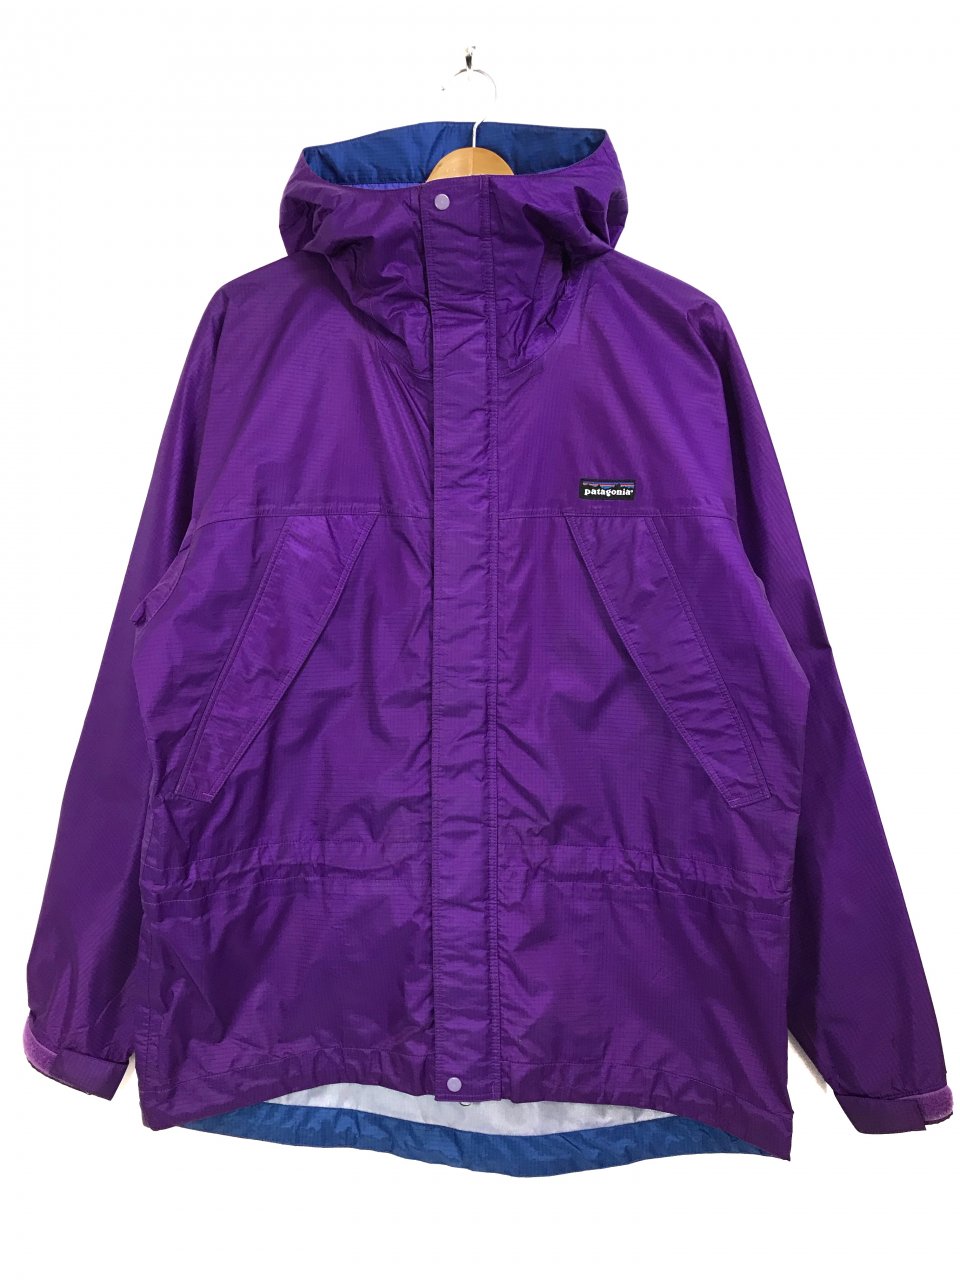 94年 patagonia Super Pluma Jacket (Bright Purple) S 90s 雪なしタグ ...